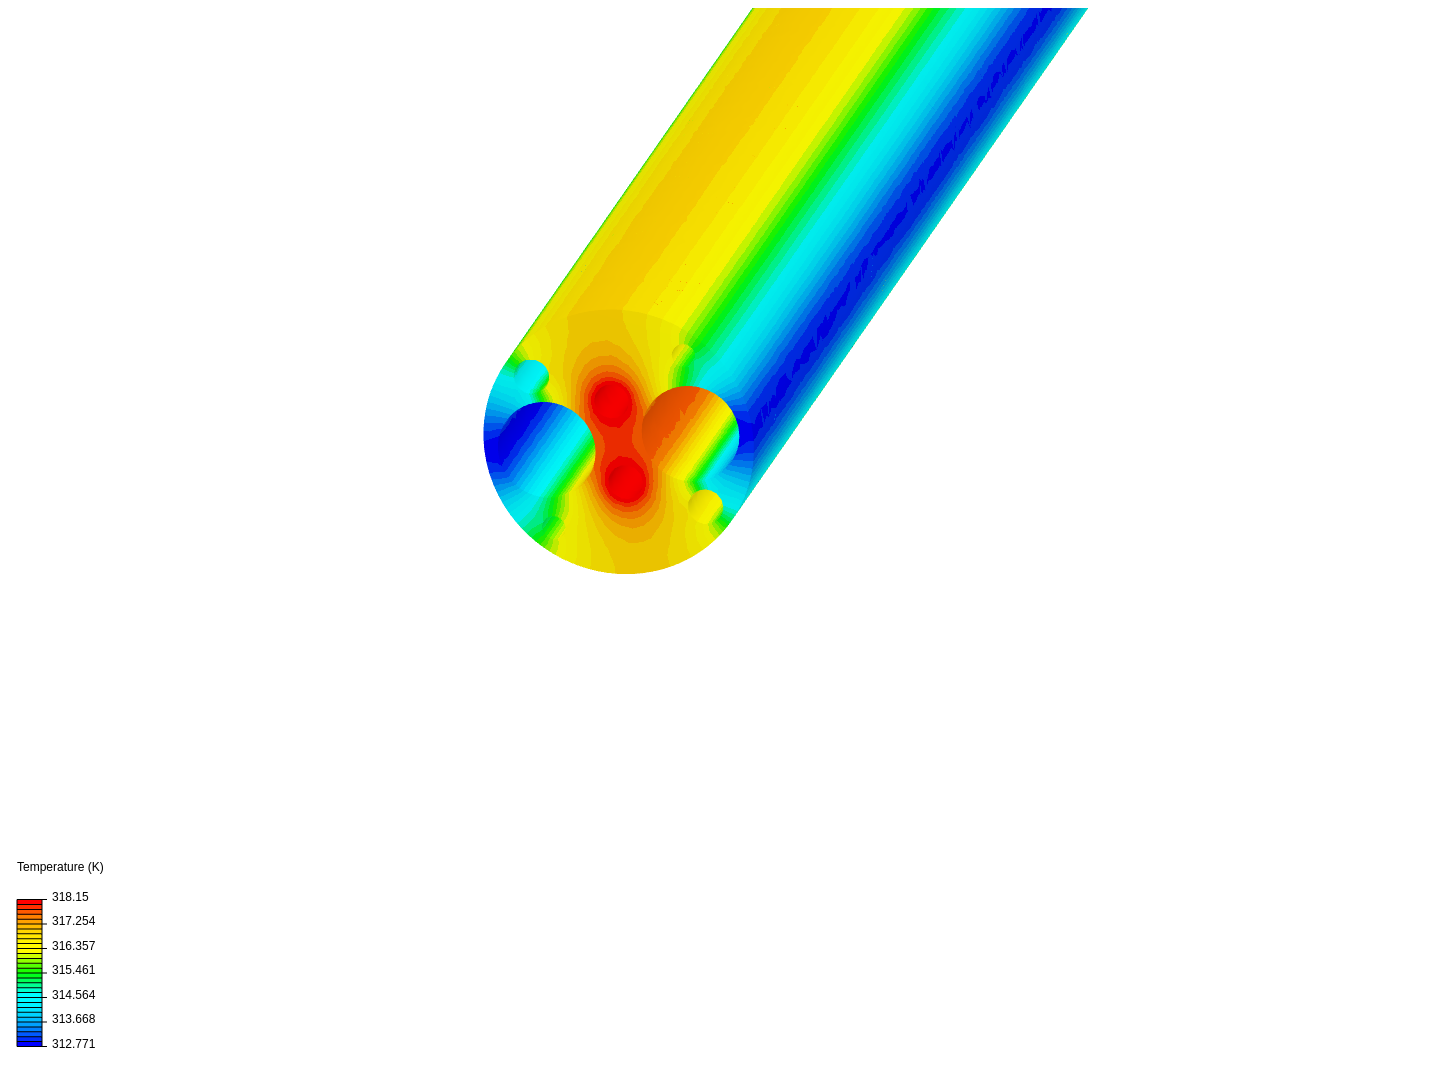 HT LHC_V3 image